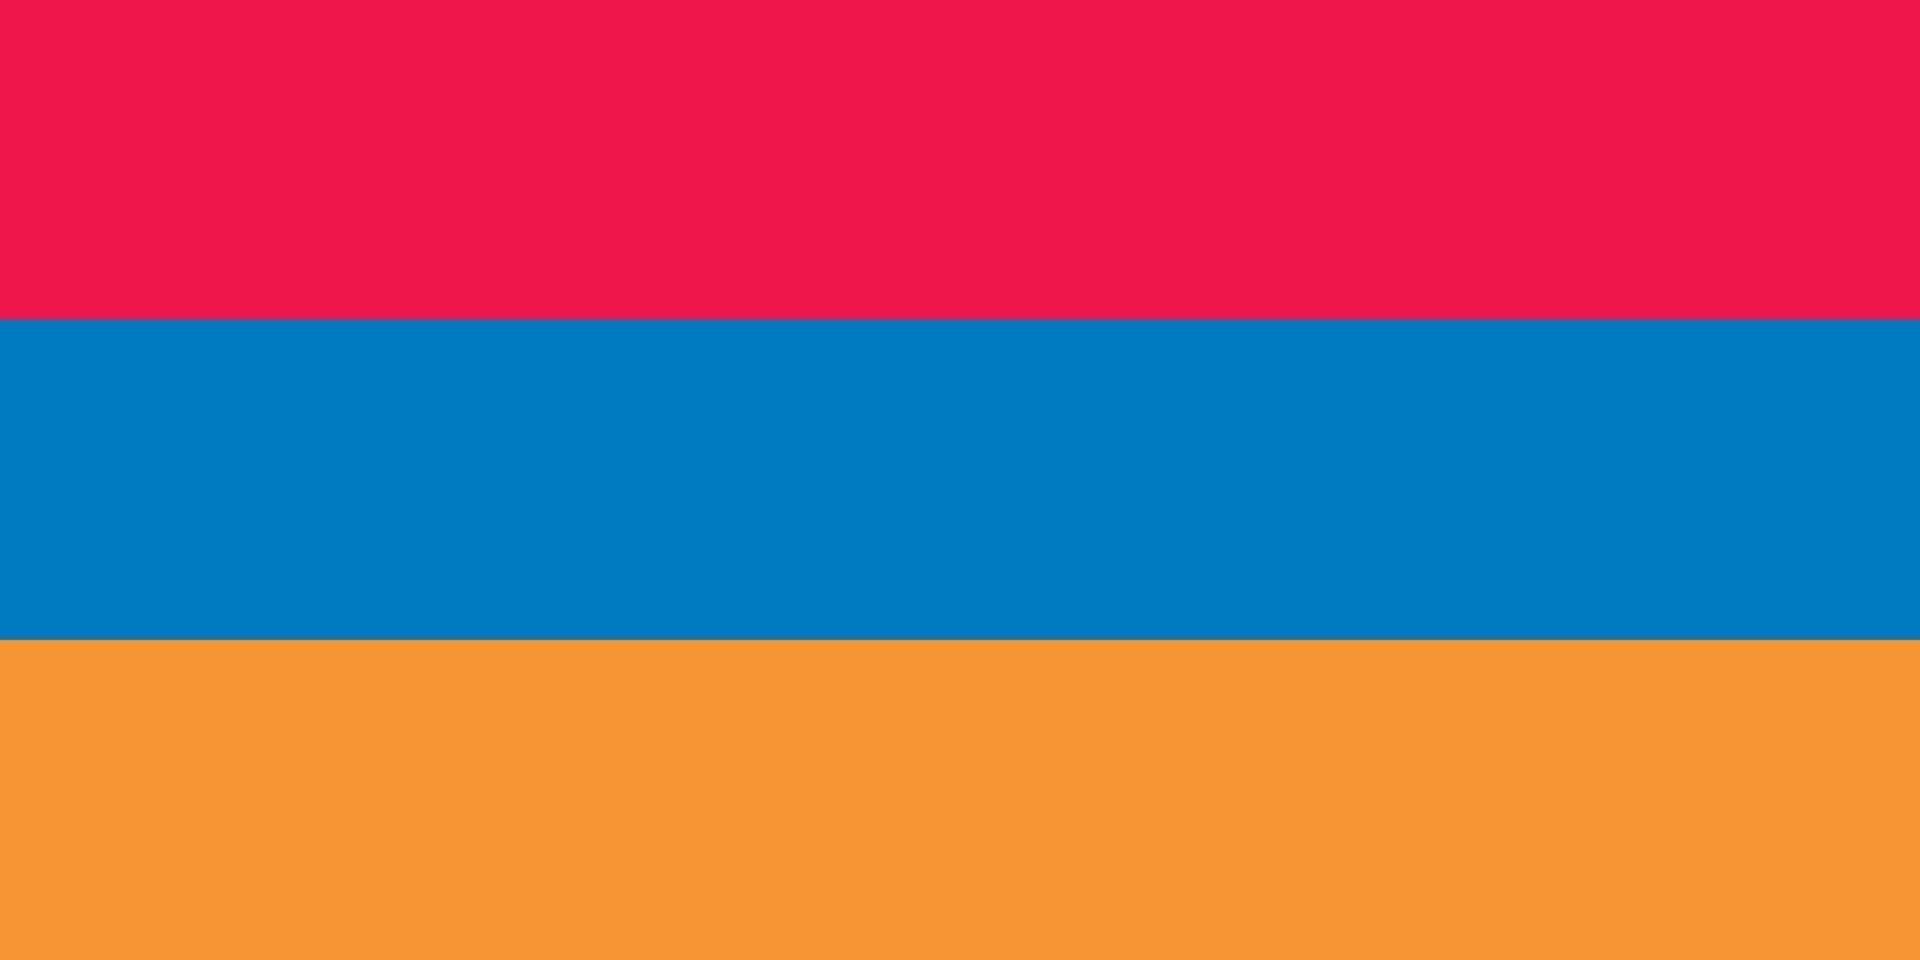 drapeau officiel de l'Arménie vecteur